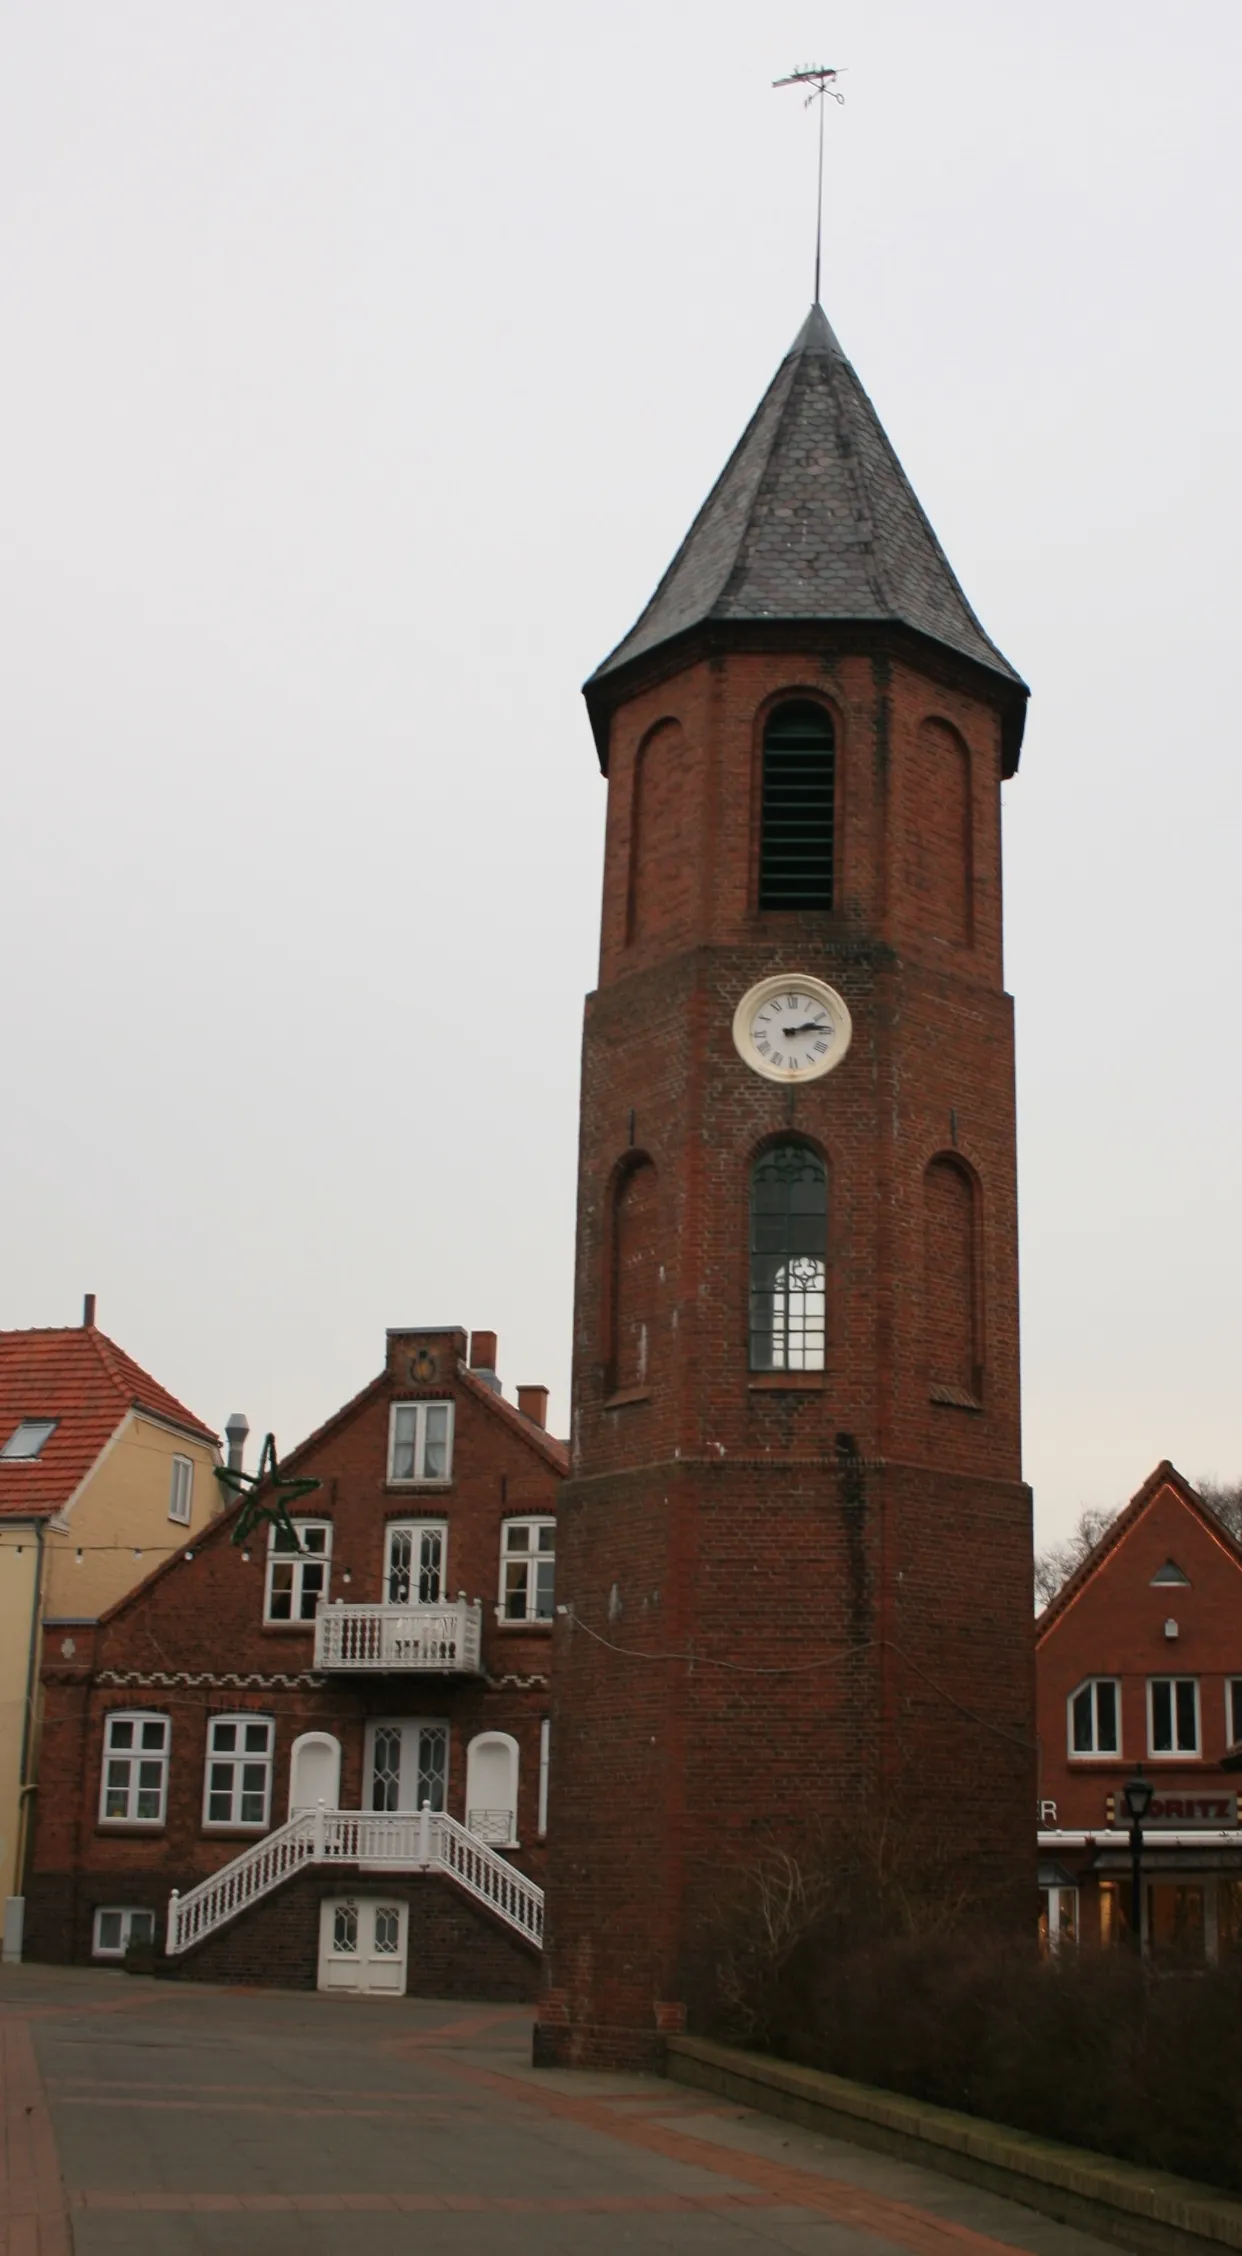 Image of Wyk auf Föhr